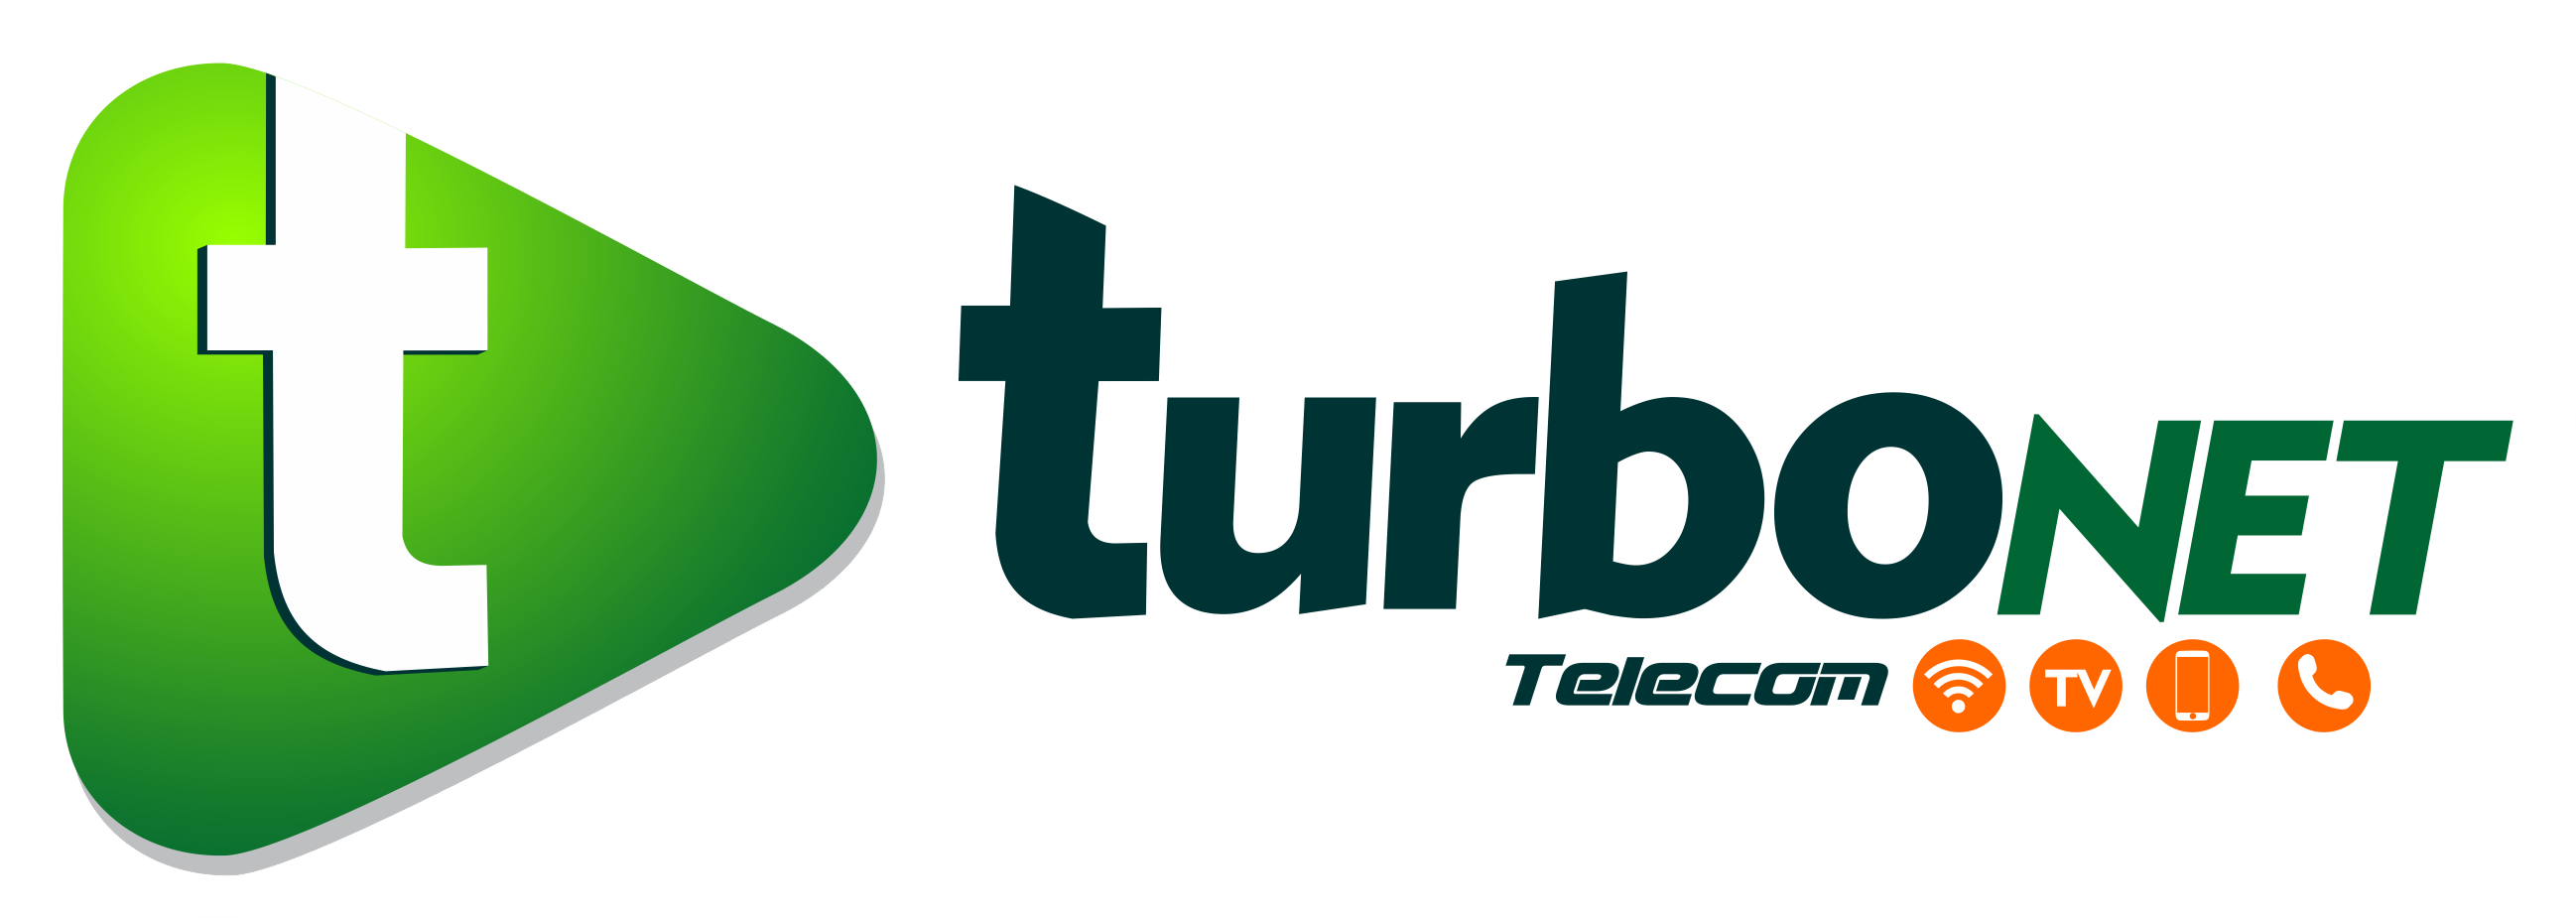 Turbo NET – Provedor de Internet de qualidade!